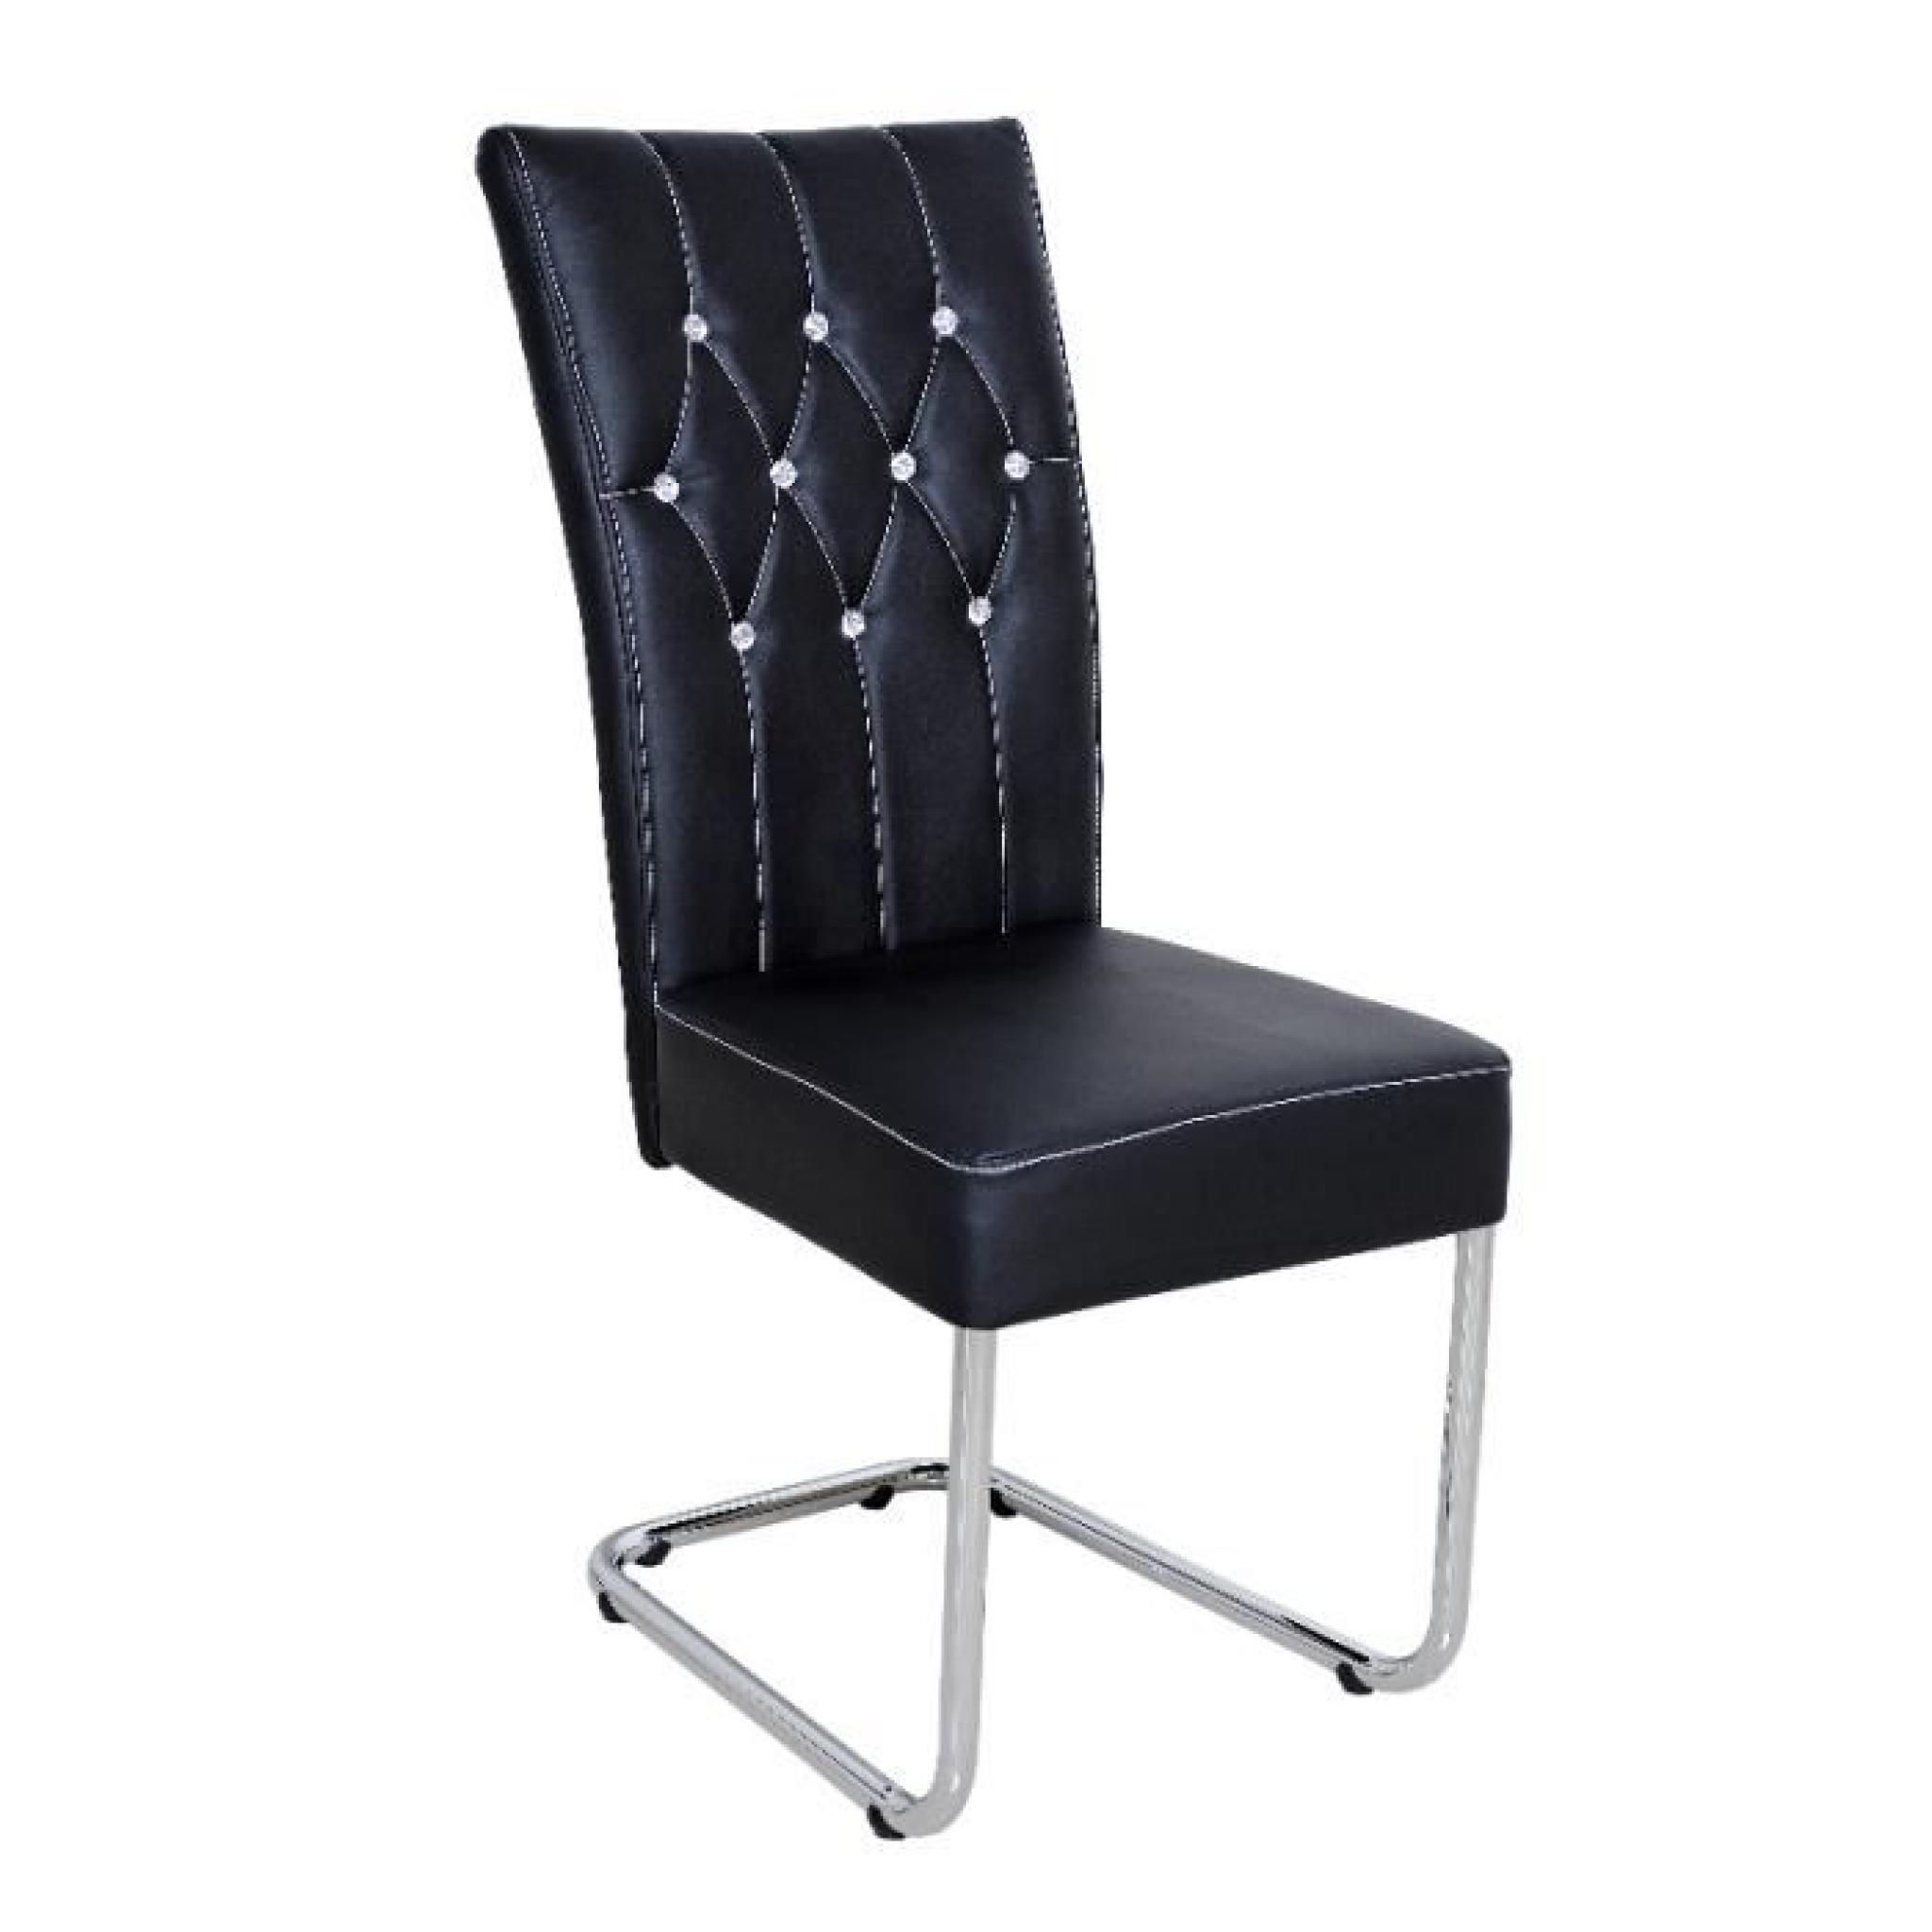 Chaise design coloris noir avec strass